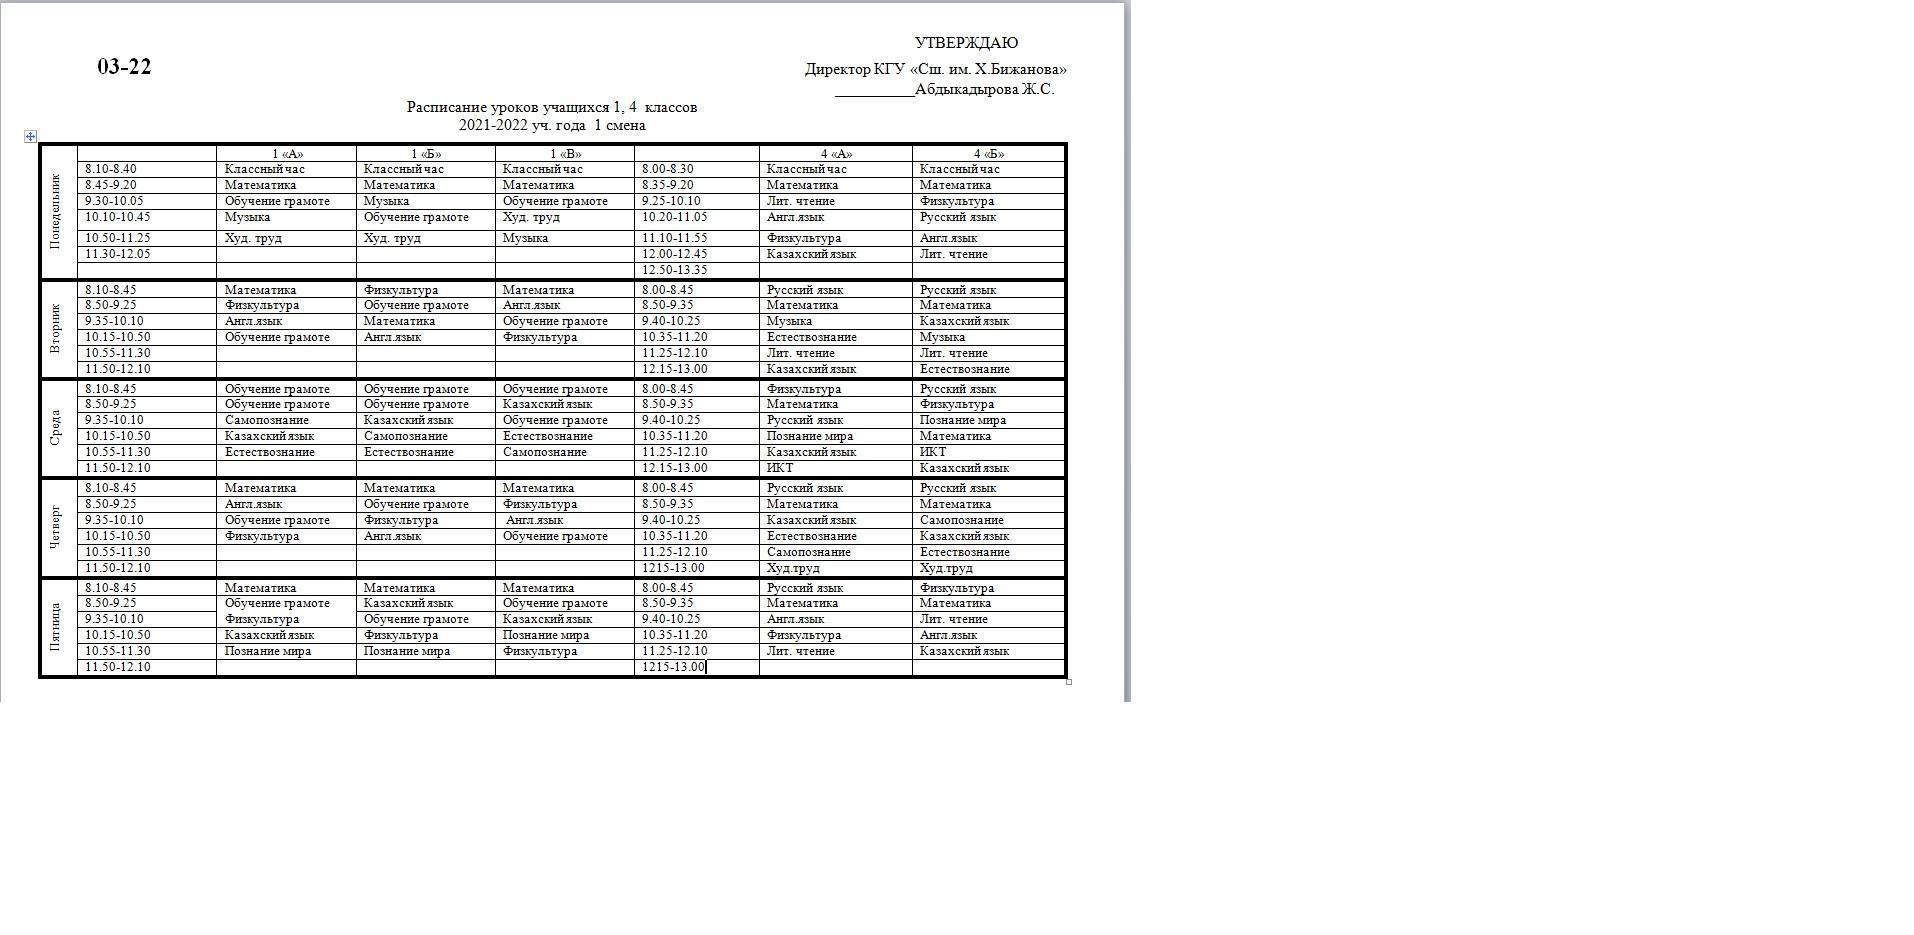 Расписание уроков 1-4 классы на 1 полугодие 20021-2022 учебного года